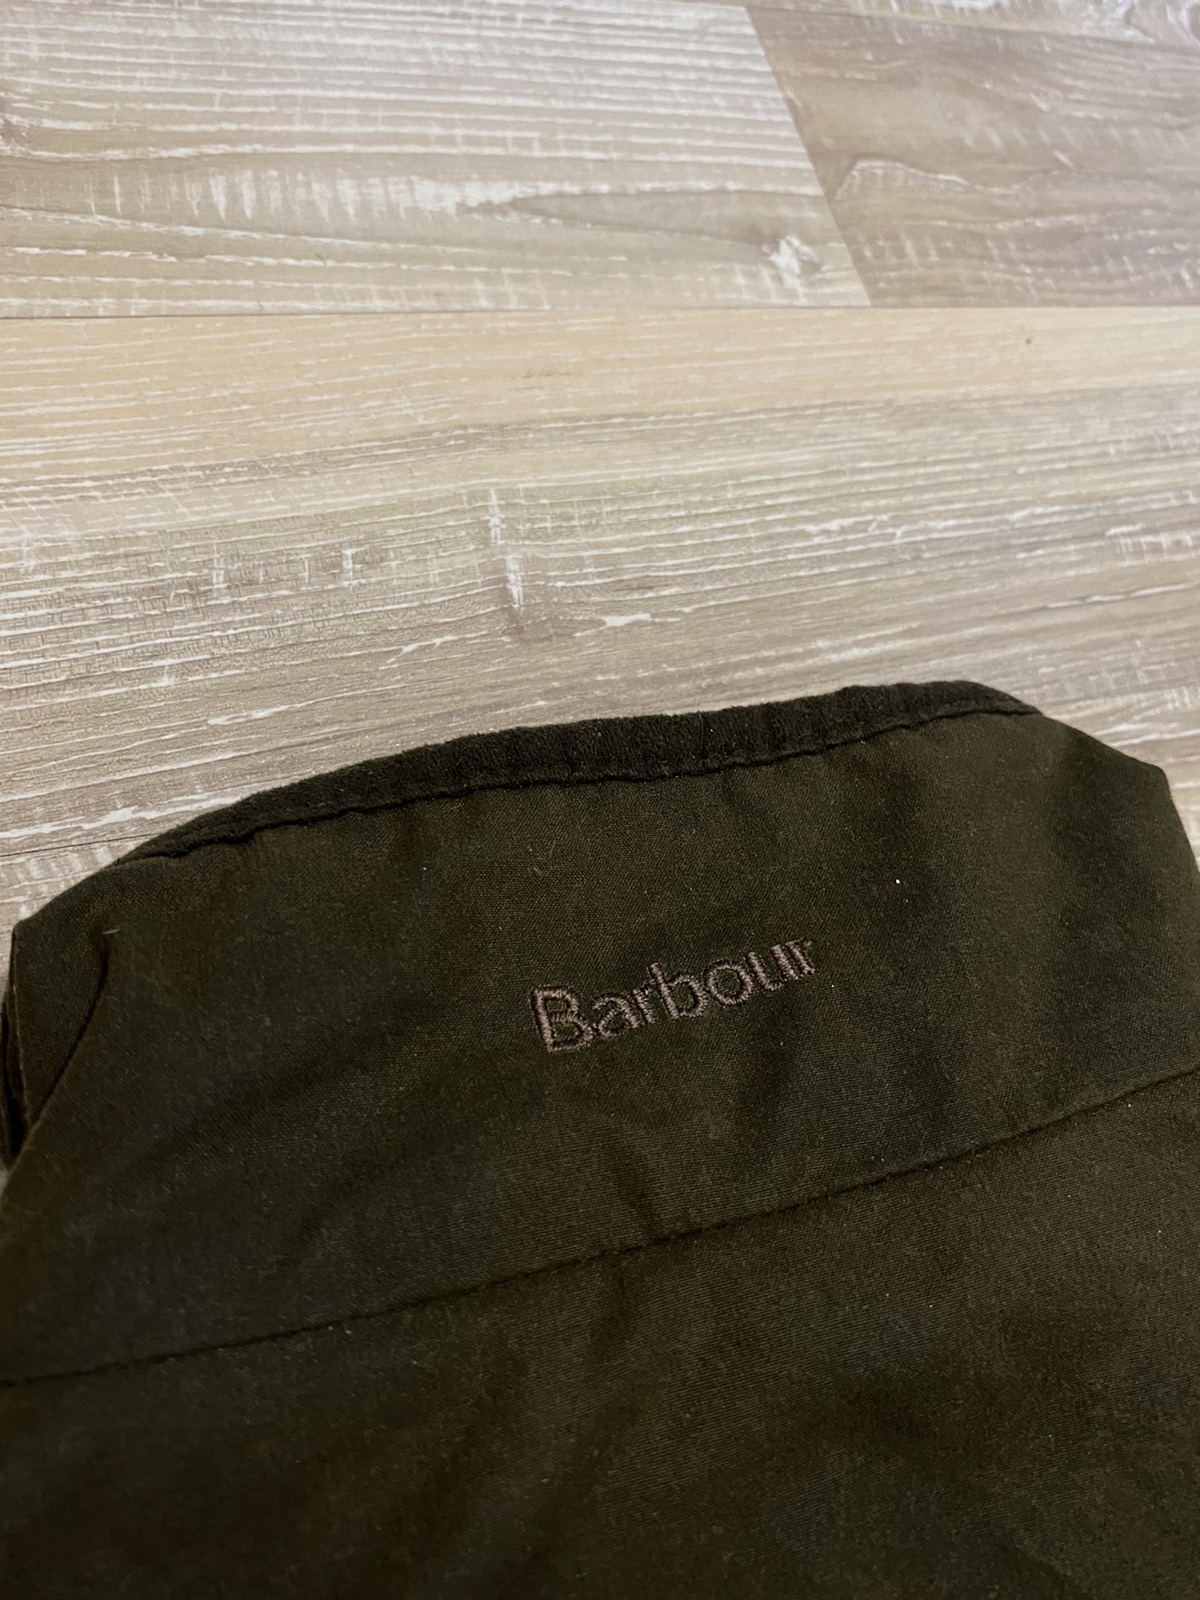 Barbour wax jacket - 14